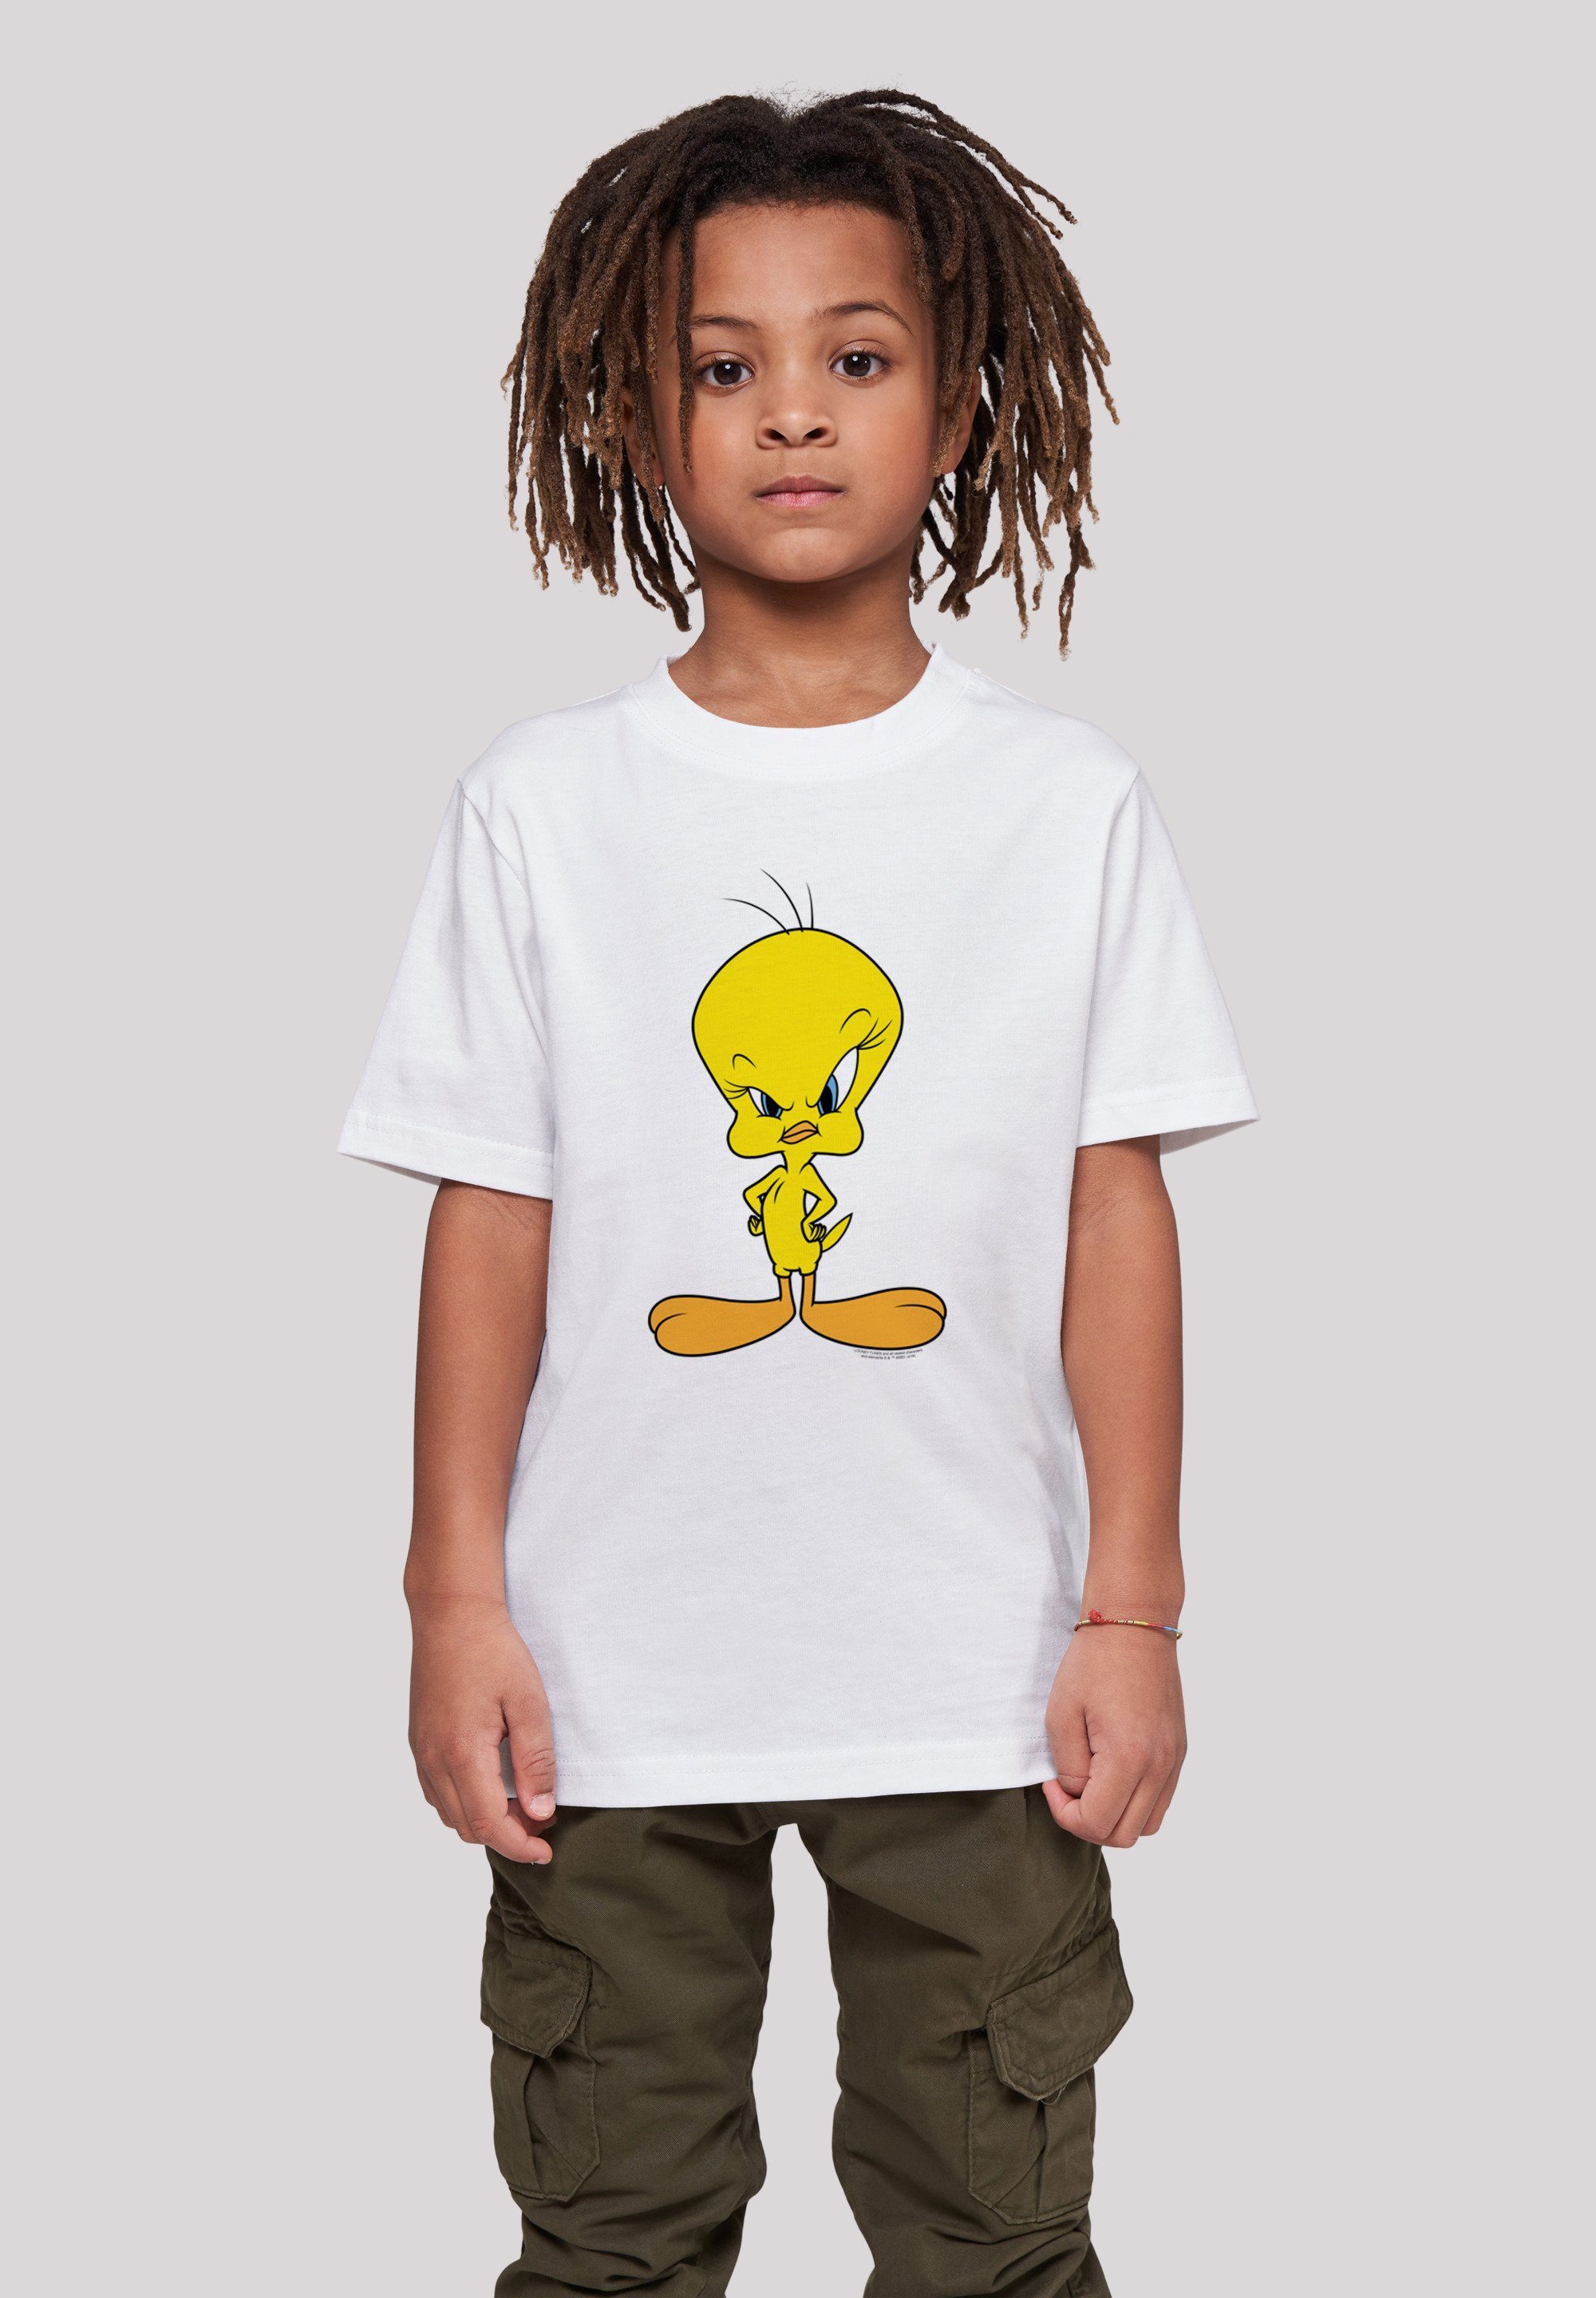 Angry Kinder,Premium Tweety T-Shirt Unisex F4NT4STIC Tunes Merch,Jungen,Mädchen,Bedruckt Looney